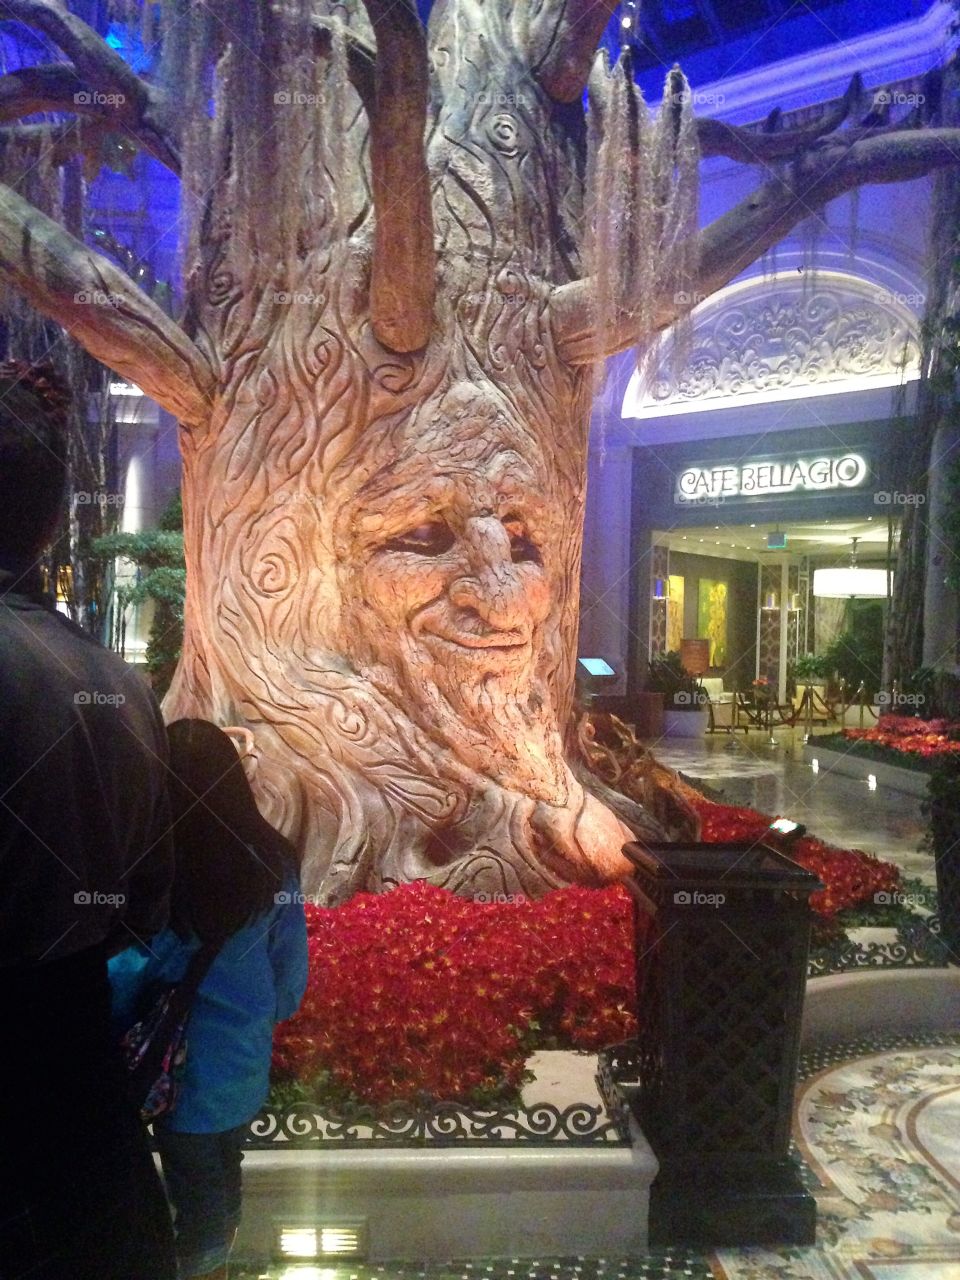 Fairytale tree, the Bellagio, Las Vegas 